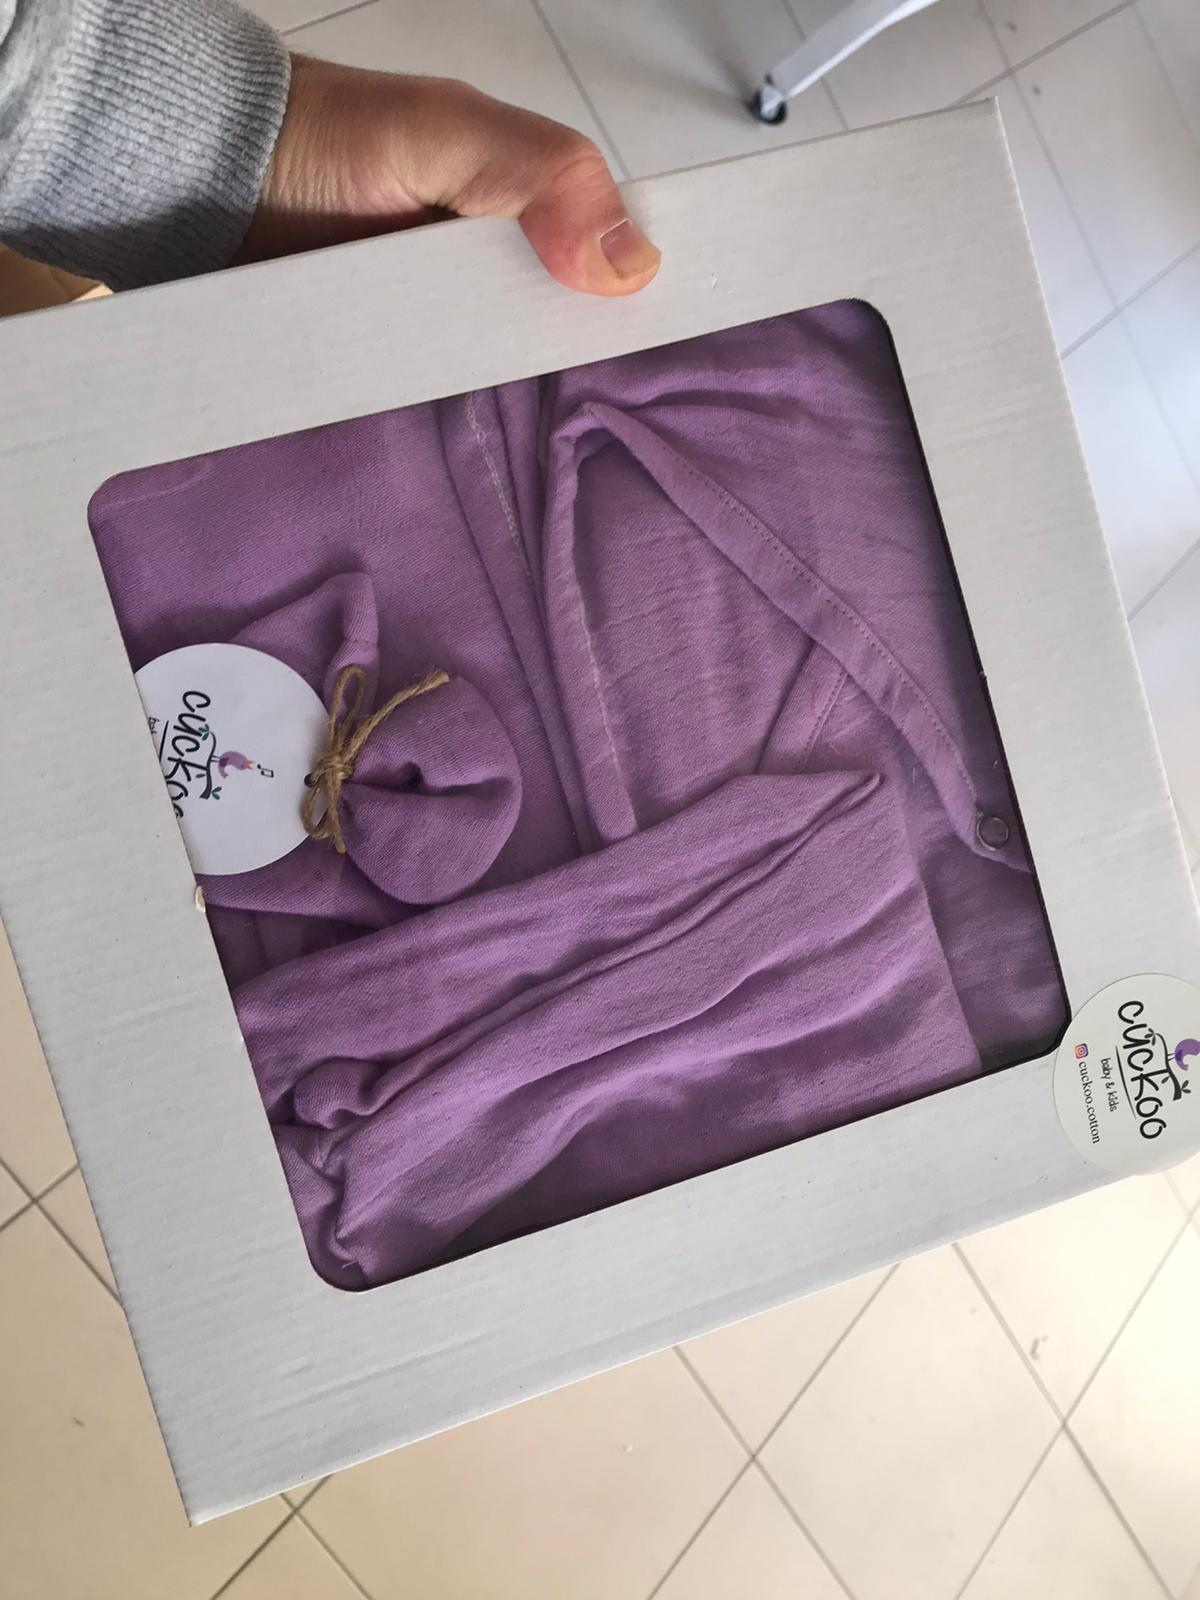 Une personne tenant un ensemble emballé de literie pour bébé violette Carte Cadeaux Naissance avec une étiquette visible de la marque BABY-PREMA.